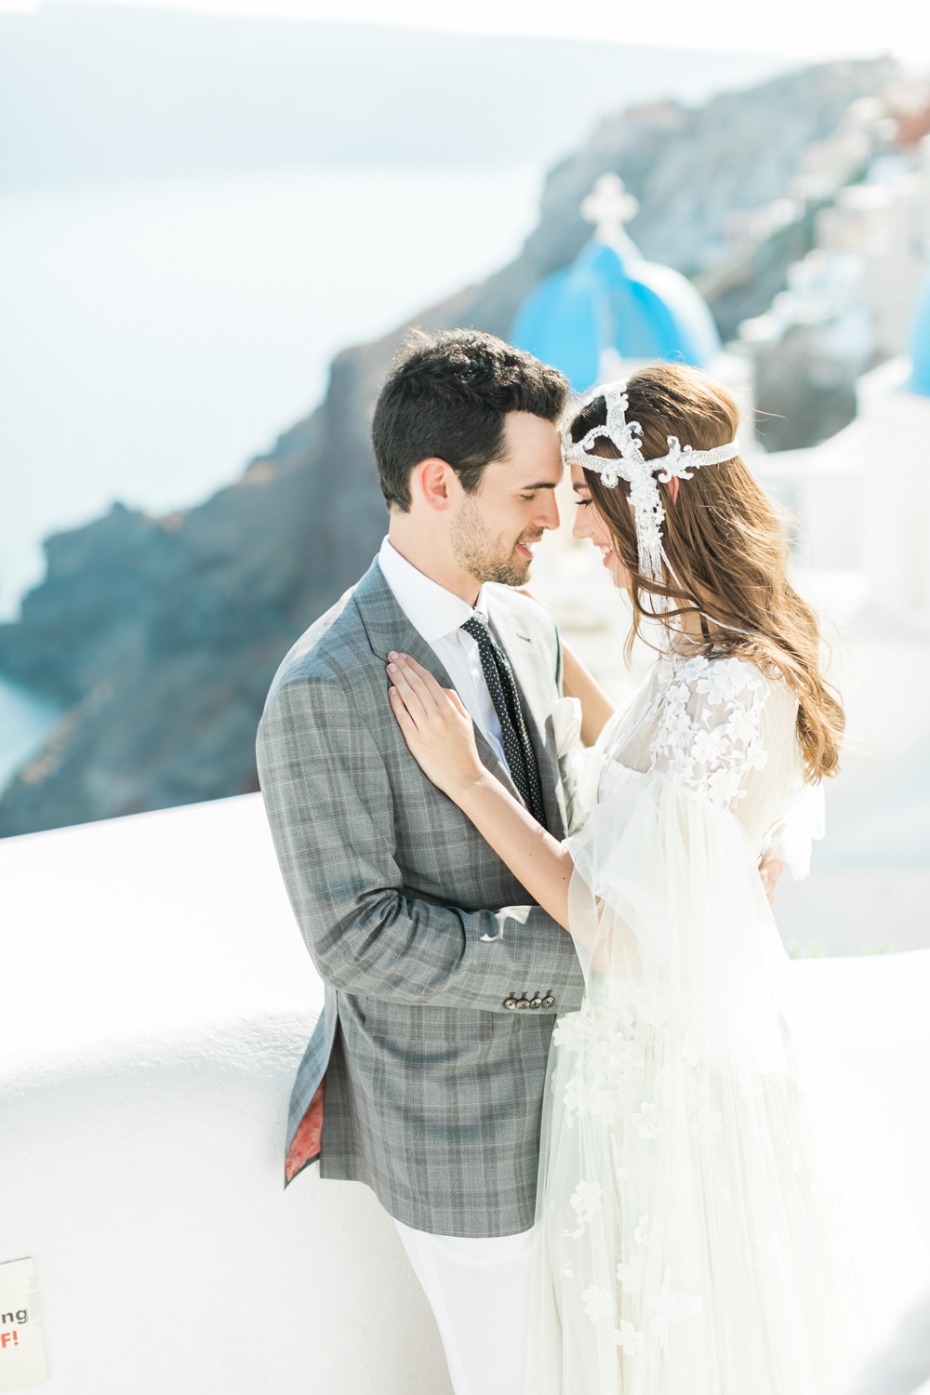 Gorgeous wedding ideas from Santorini